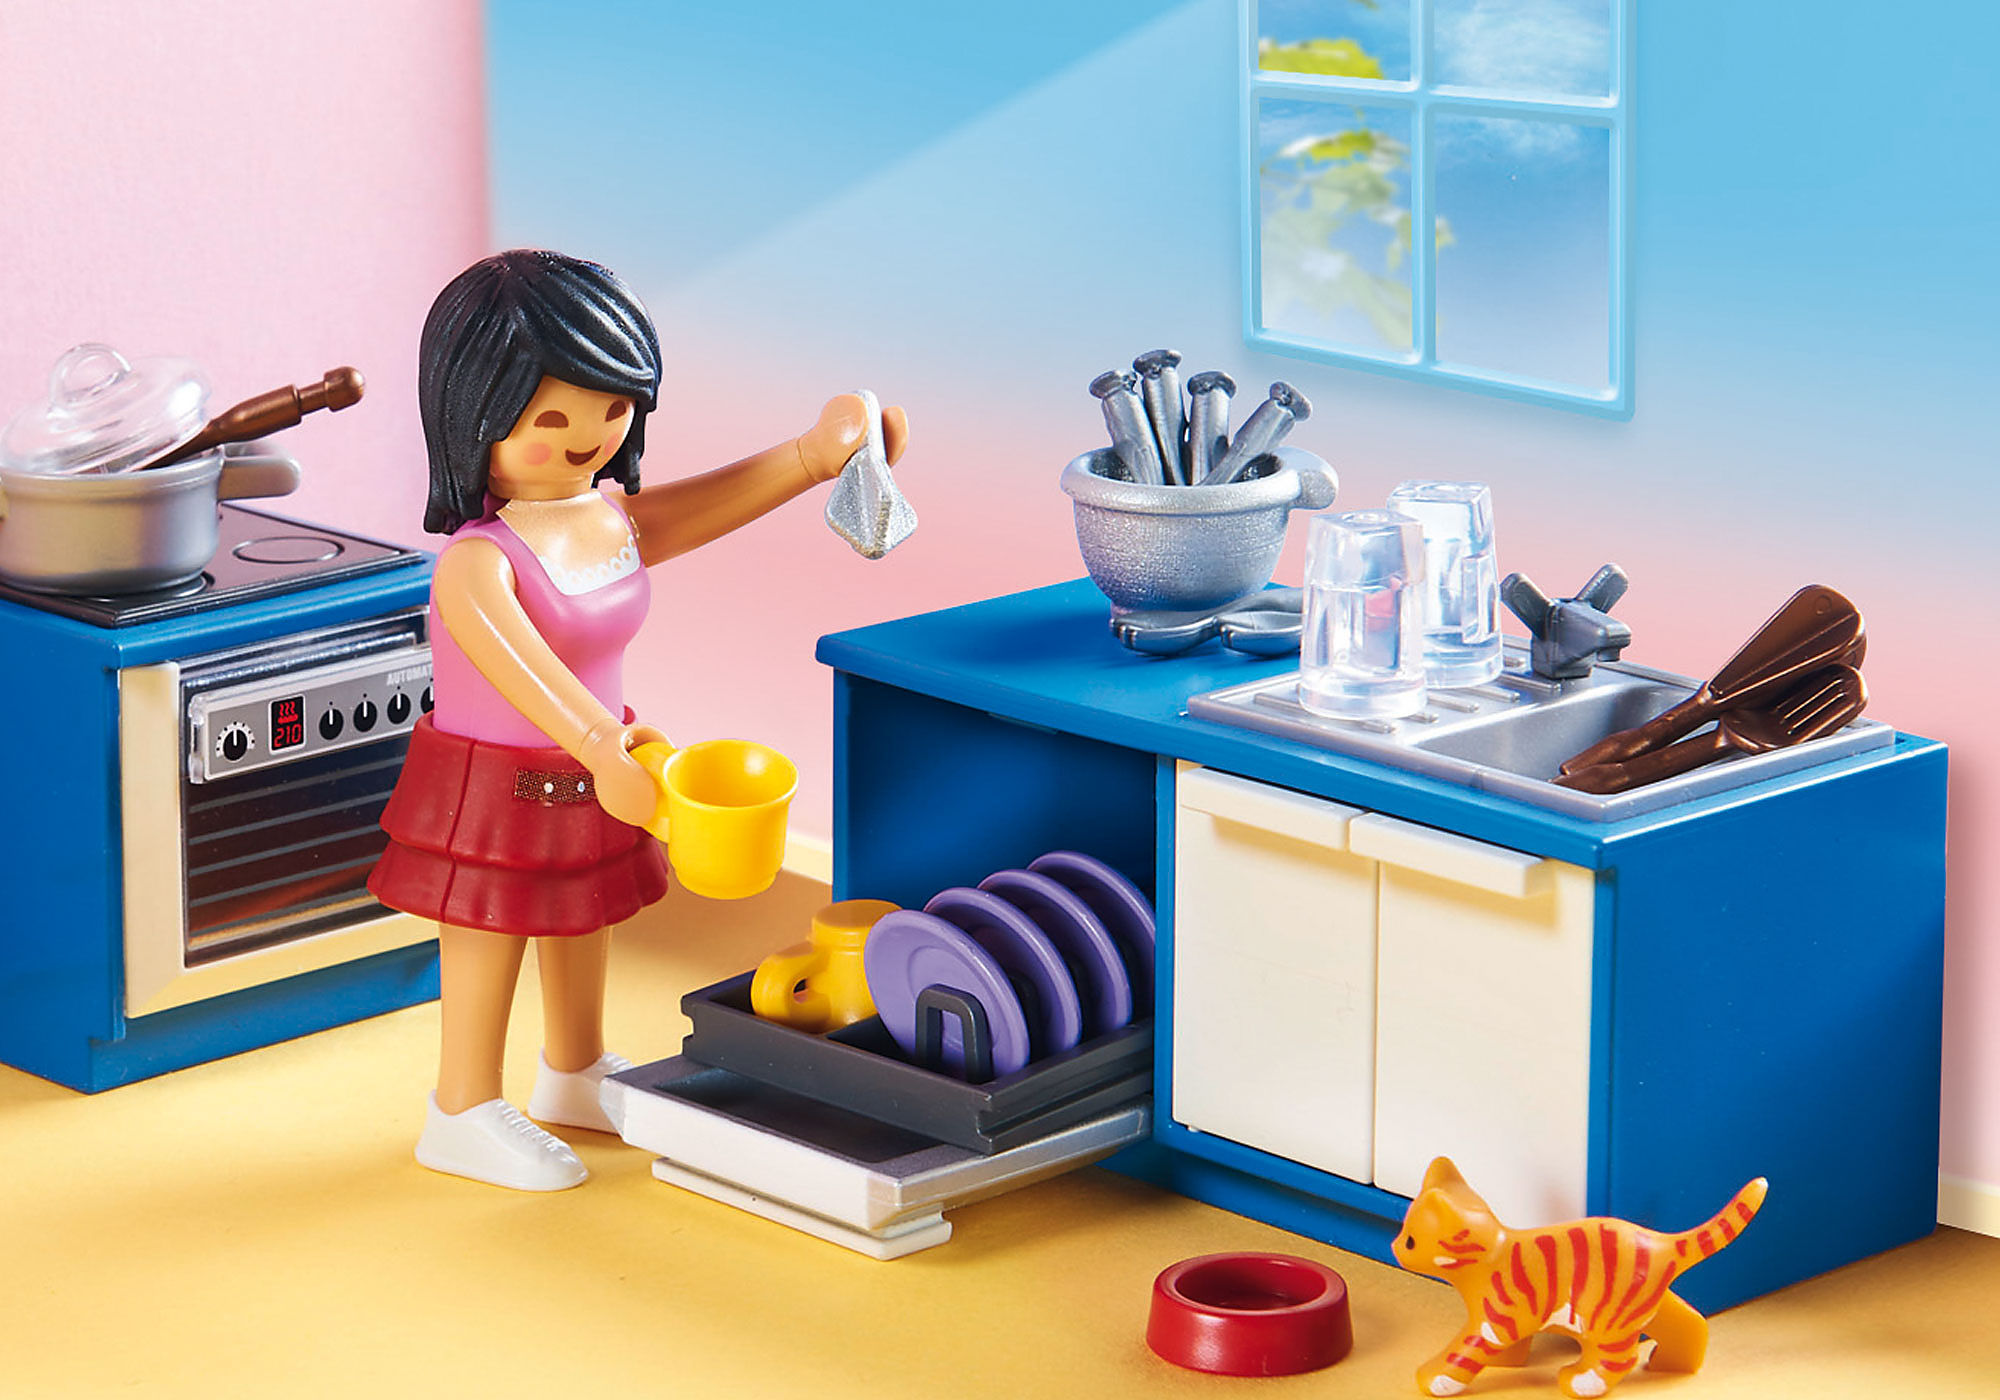 Playmobil 70206 Cocina para la casa de muñecas de segunda mano por